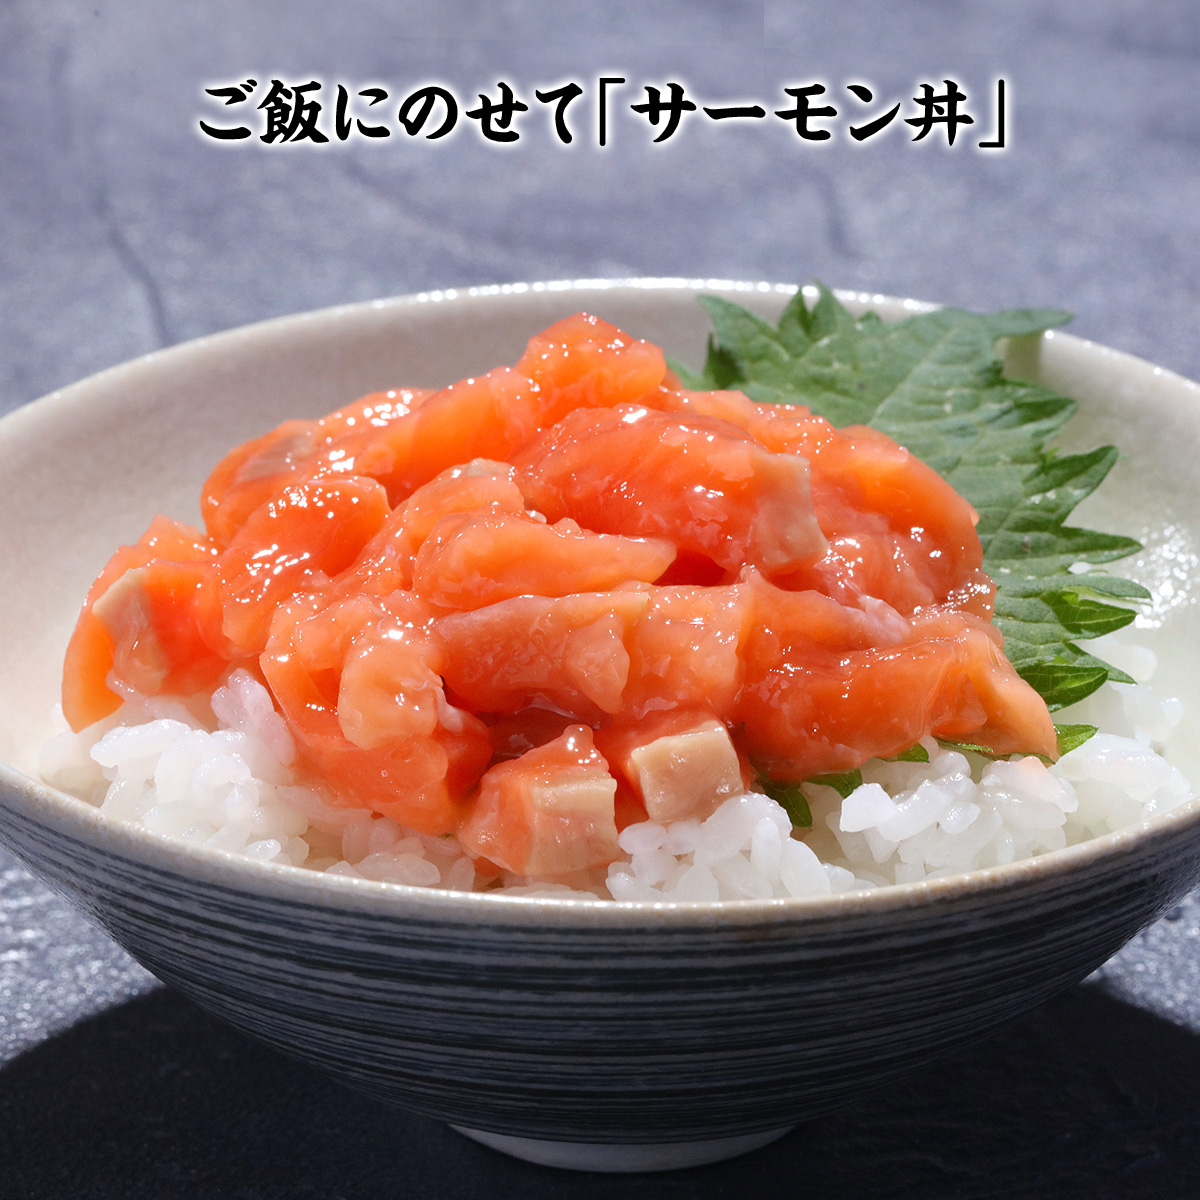 サーモンたたき丼4食入り 魚介類・水産加工品